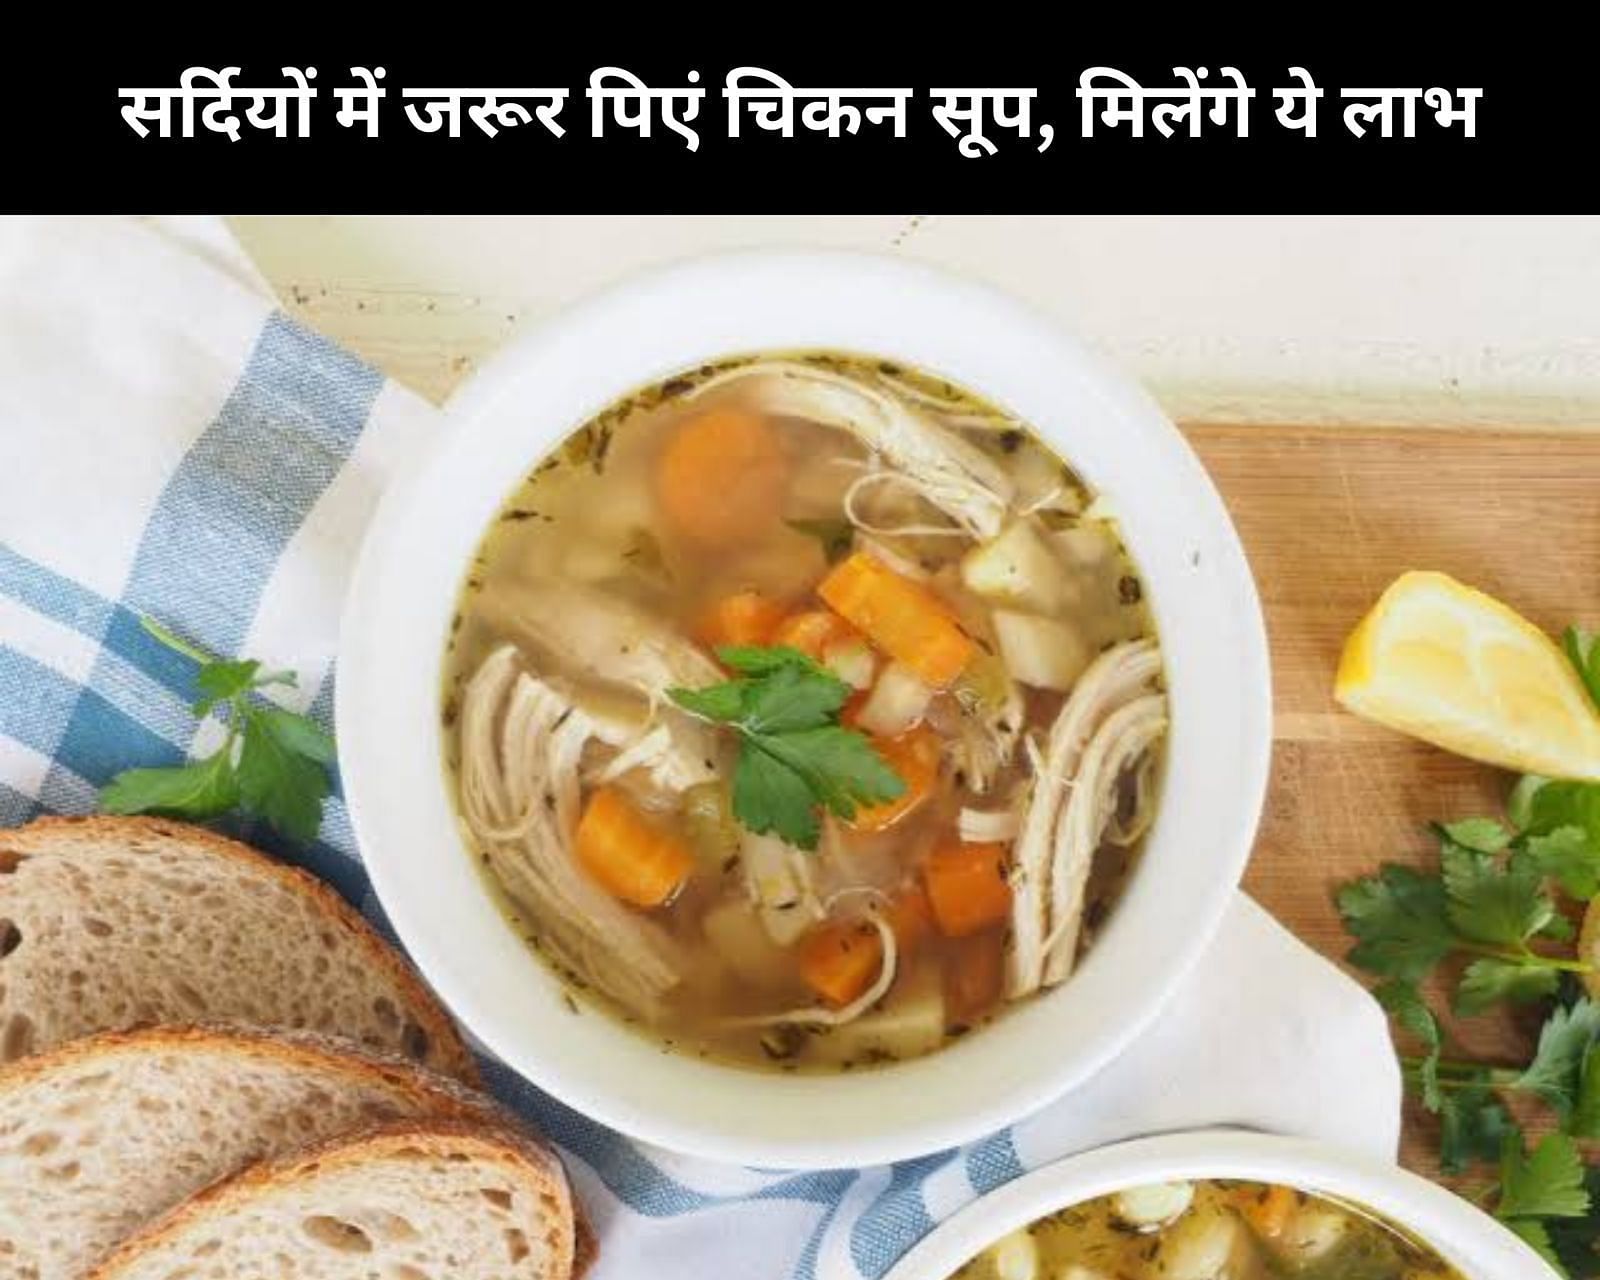 सर्दियों में जरूर पिएं चिकन सूप, मिलेंगे ये 10 लाभ (फोटो - sportskeedaहिन्दी)